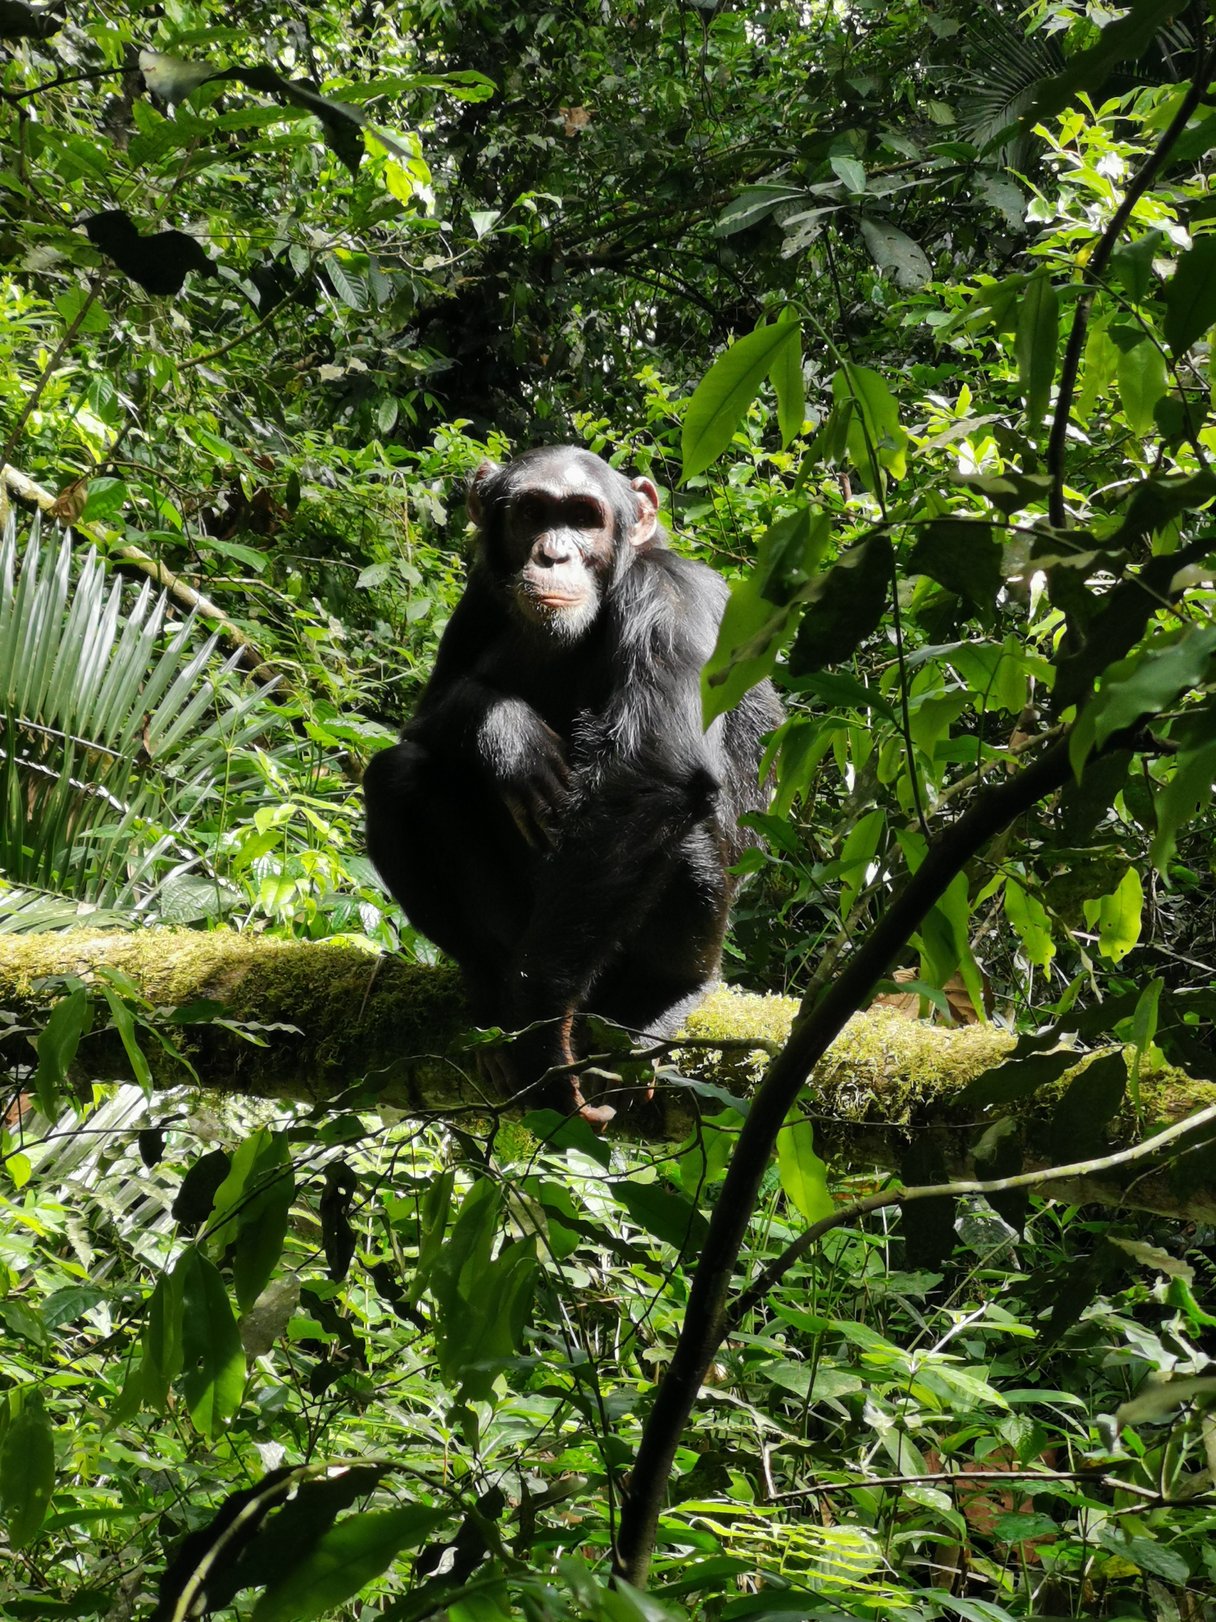 Schimpanse auf Baum im Urwald.